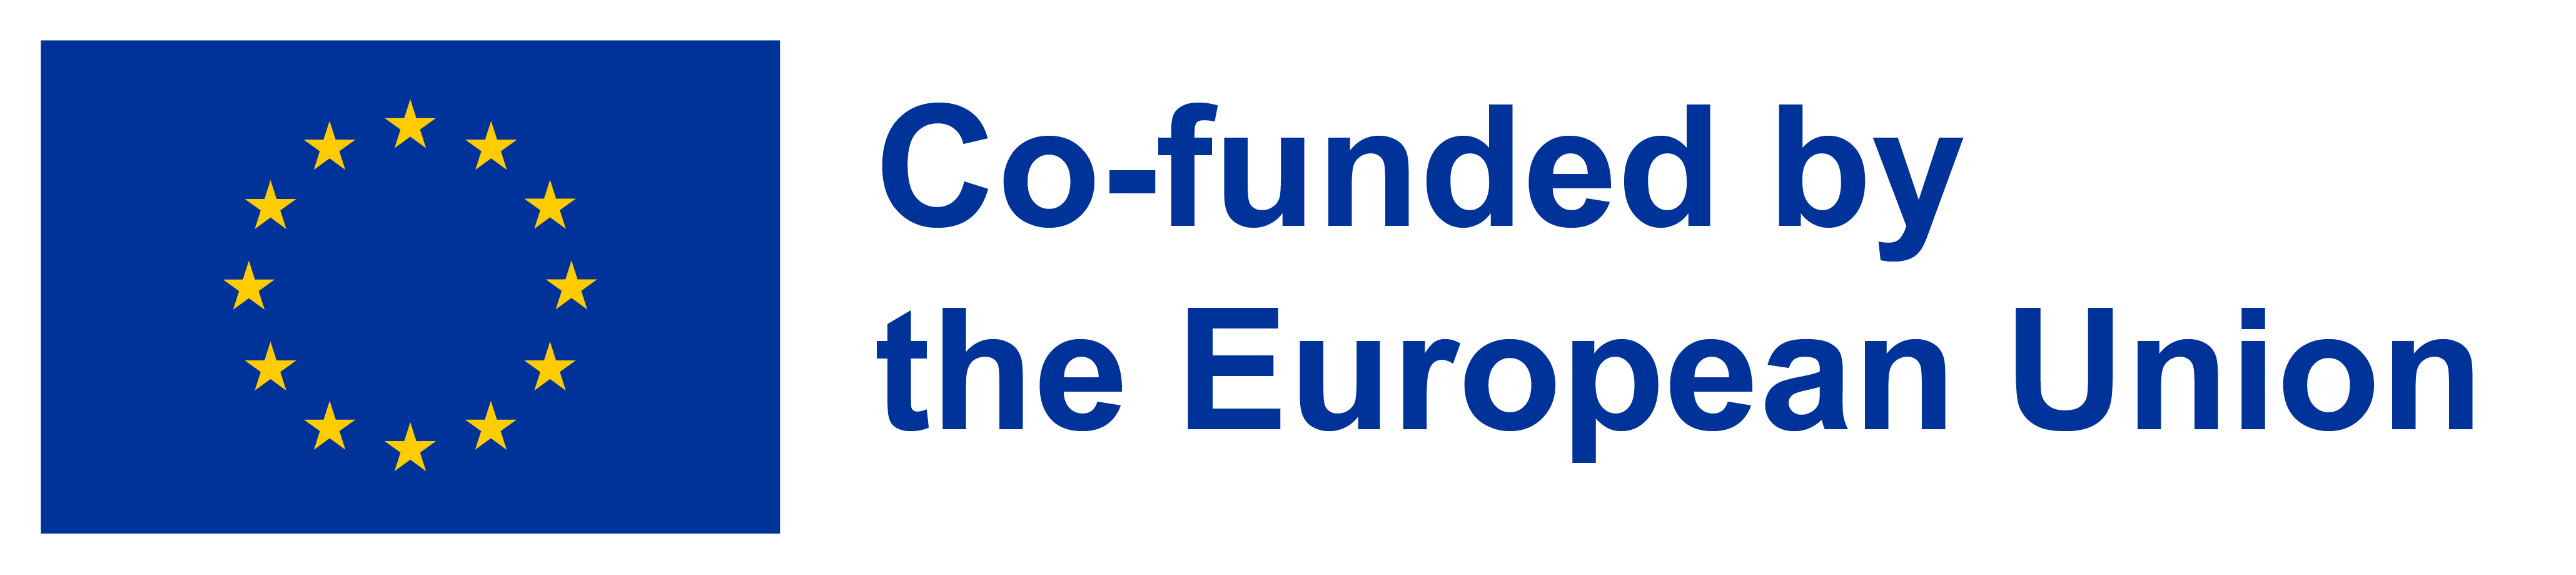 EU Co-funded